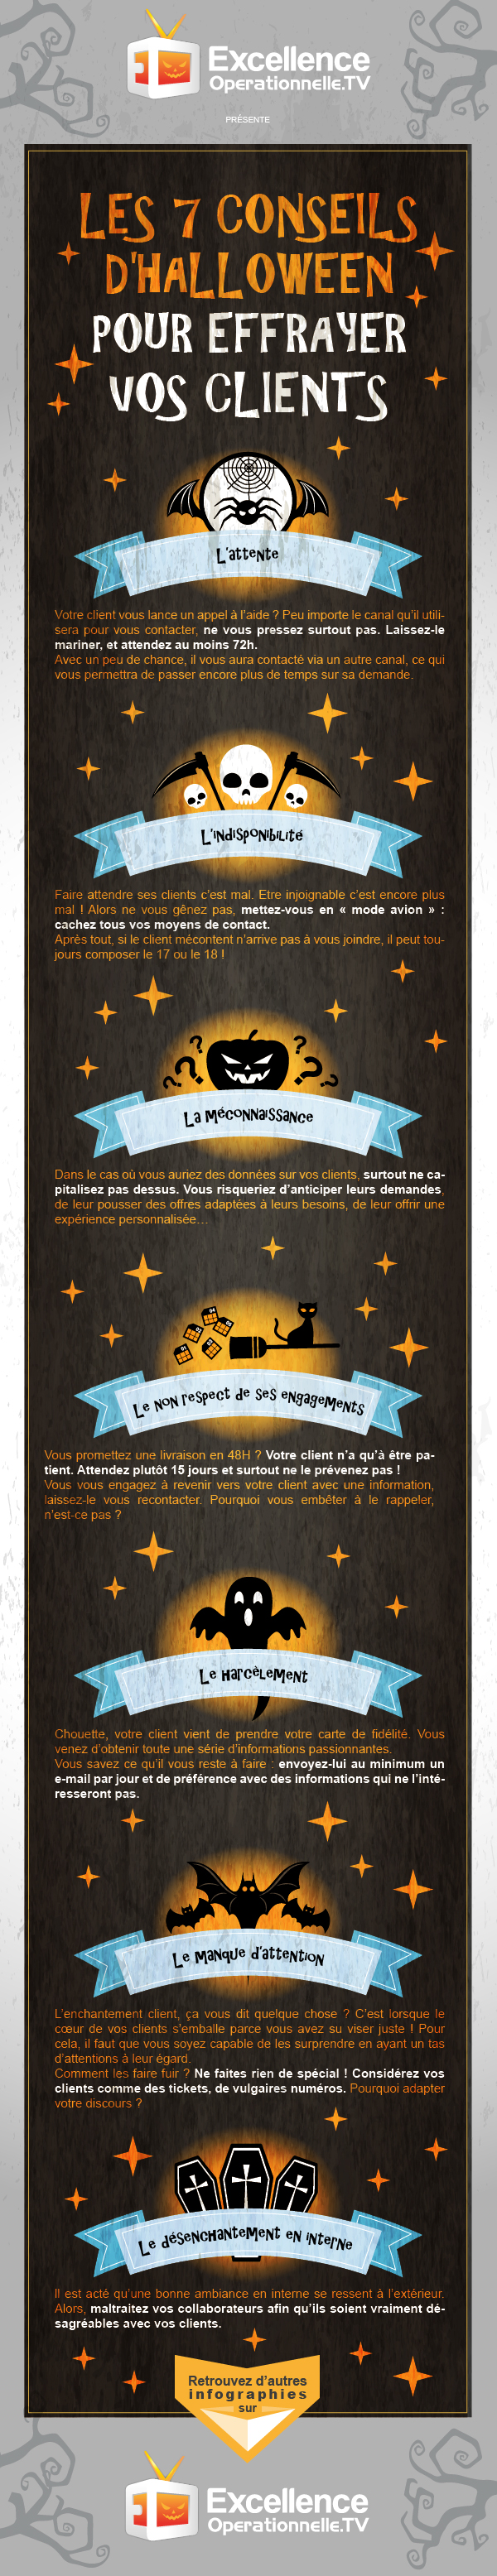 Infographie CUBIK 10 - Les 7 Conseils d'Halloween pour Effrayer vos Clients-01-01-01